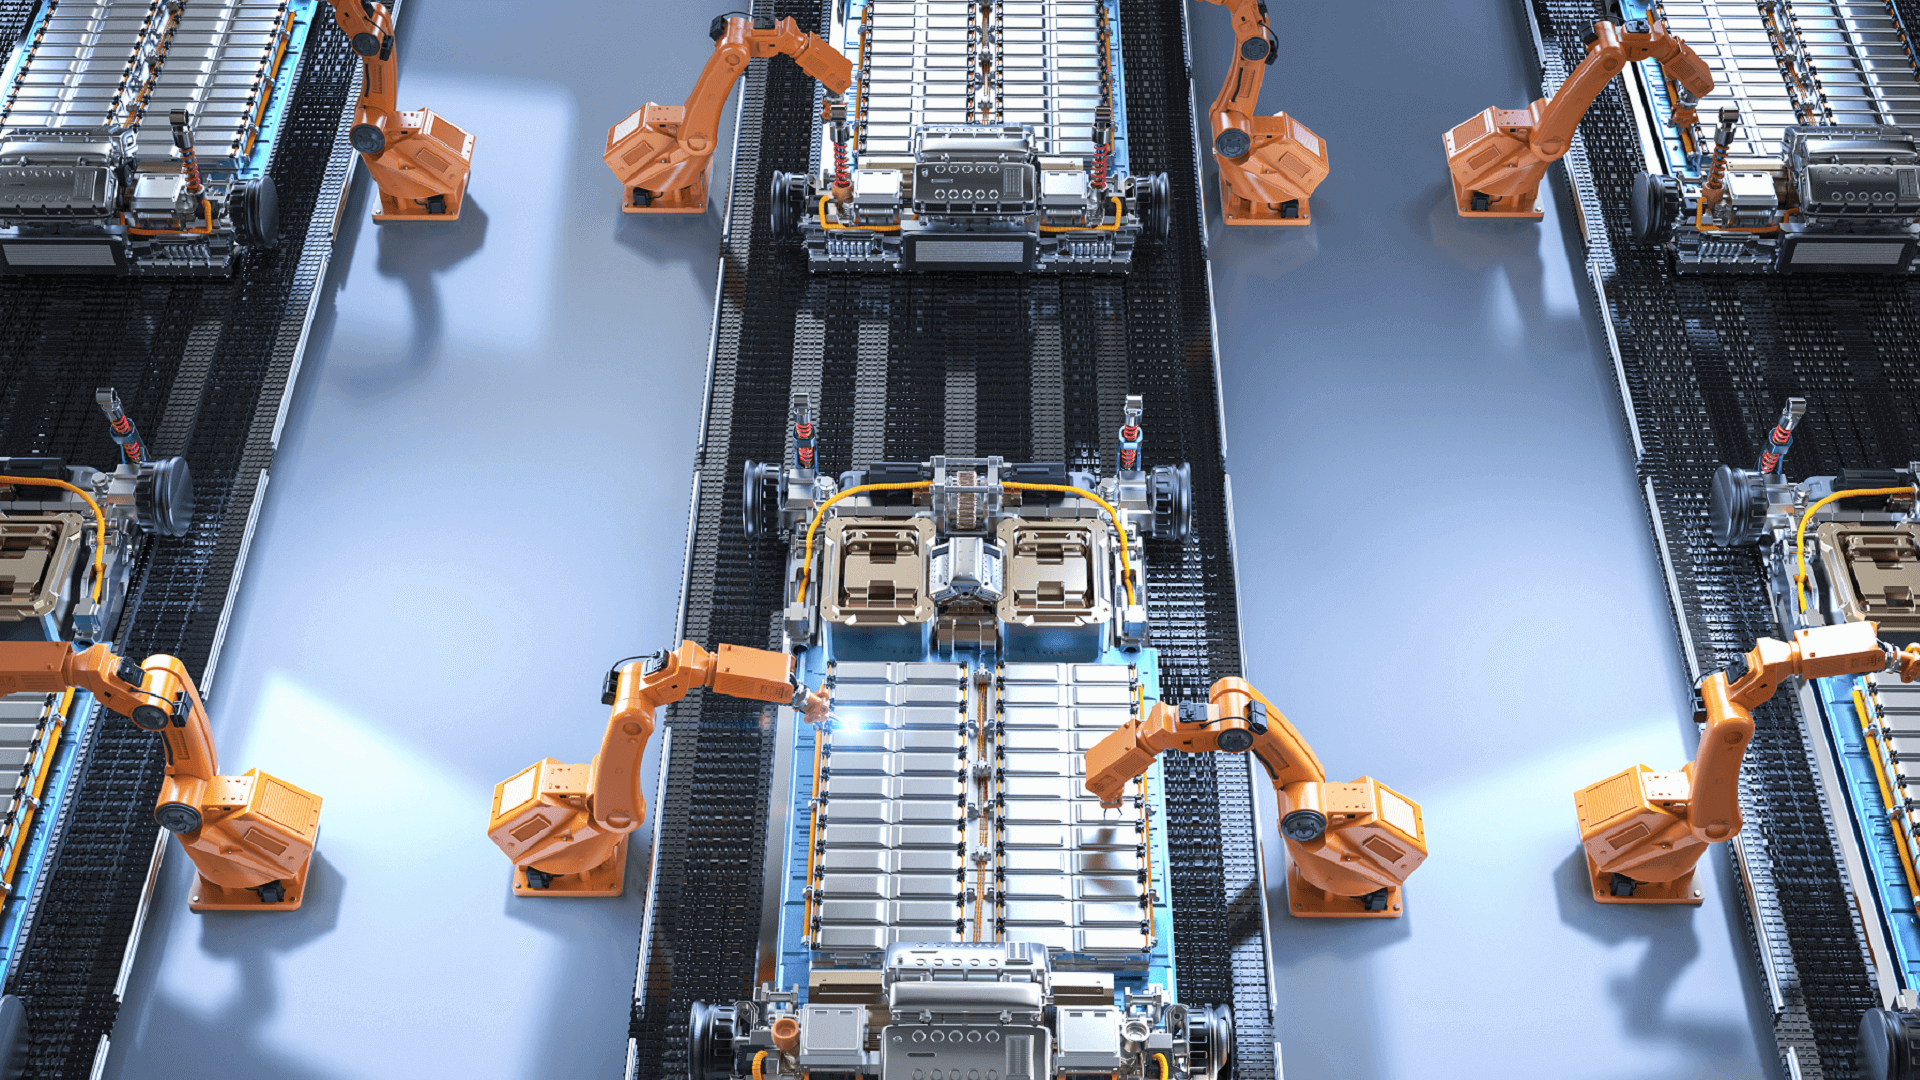 一級電動車散熱模組製造商如何在同一 IIoT 平台下成功獲得機器 OEE 和設施能源的新可視性